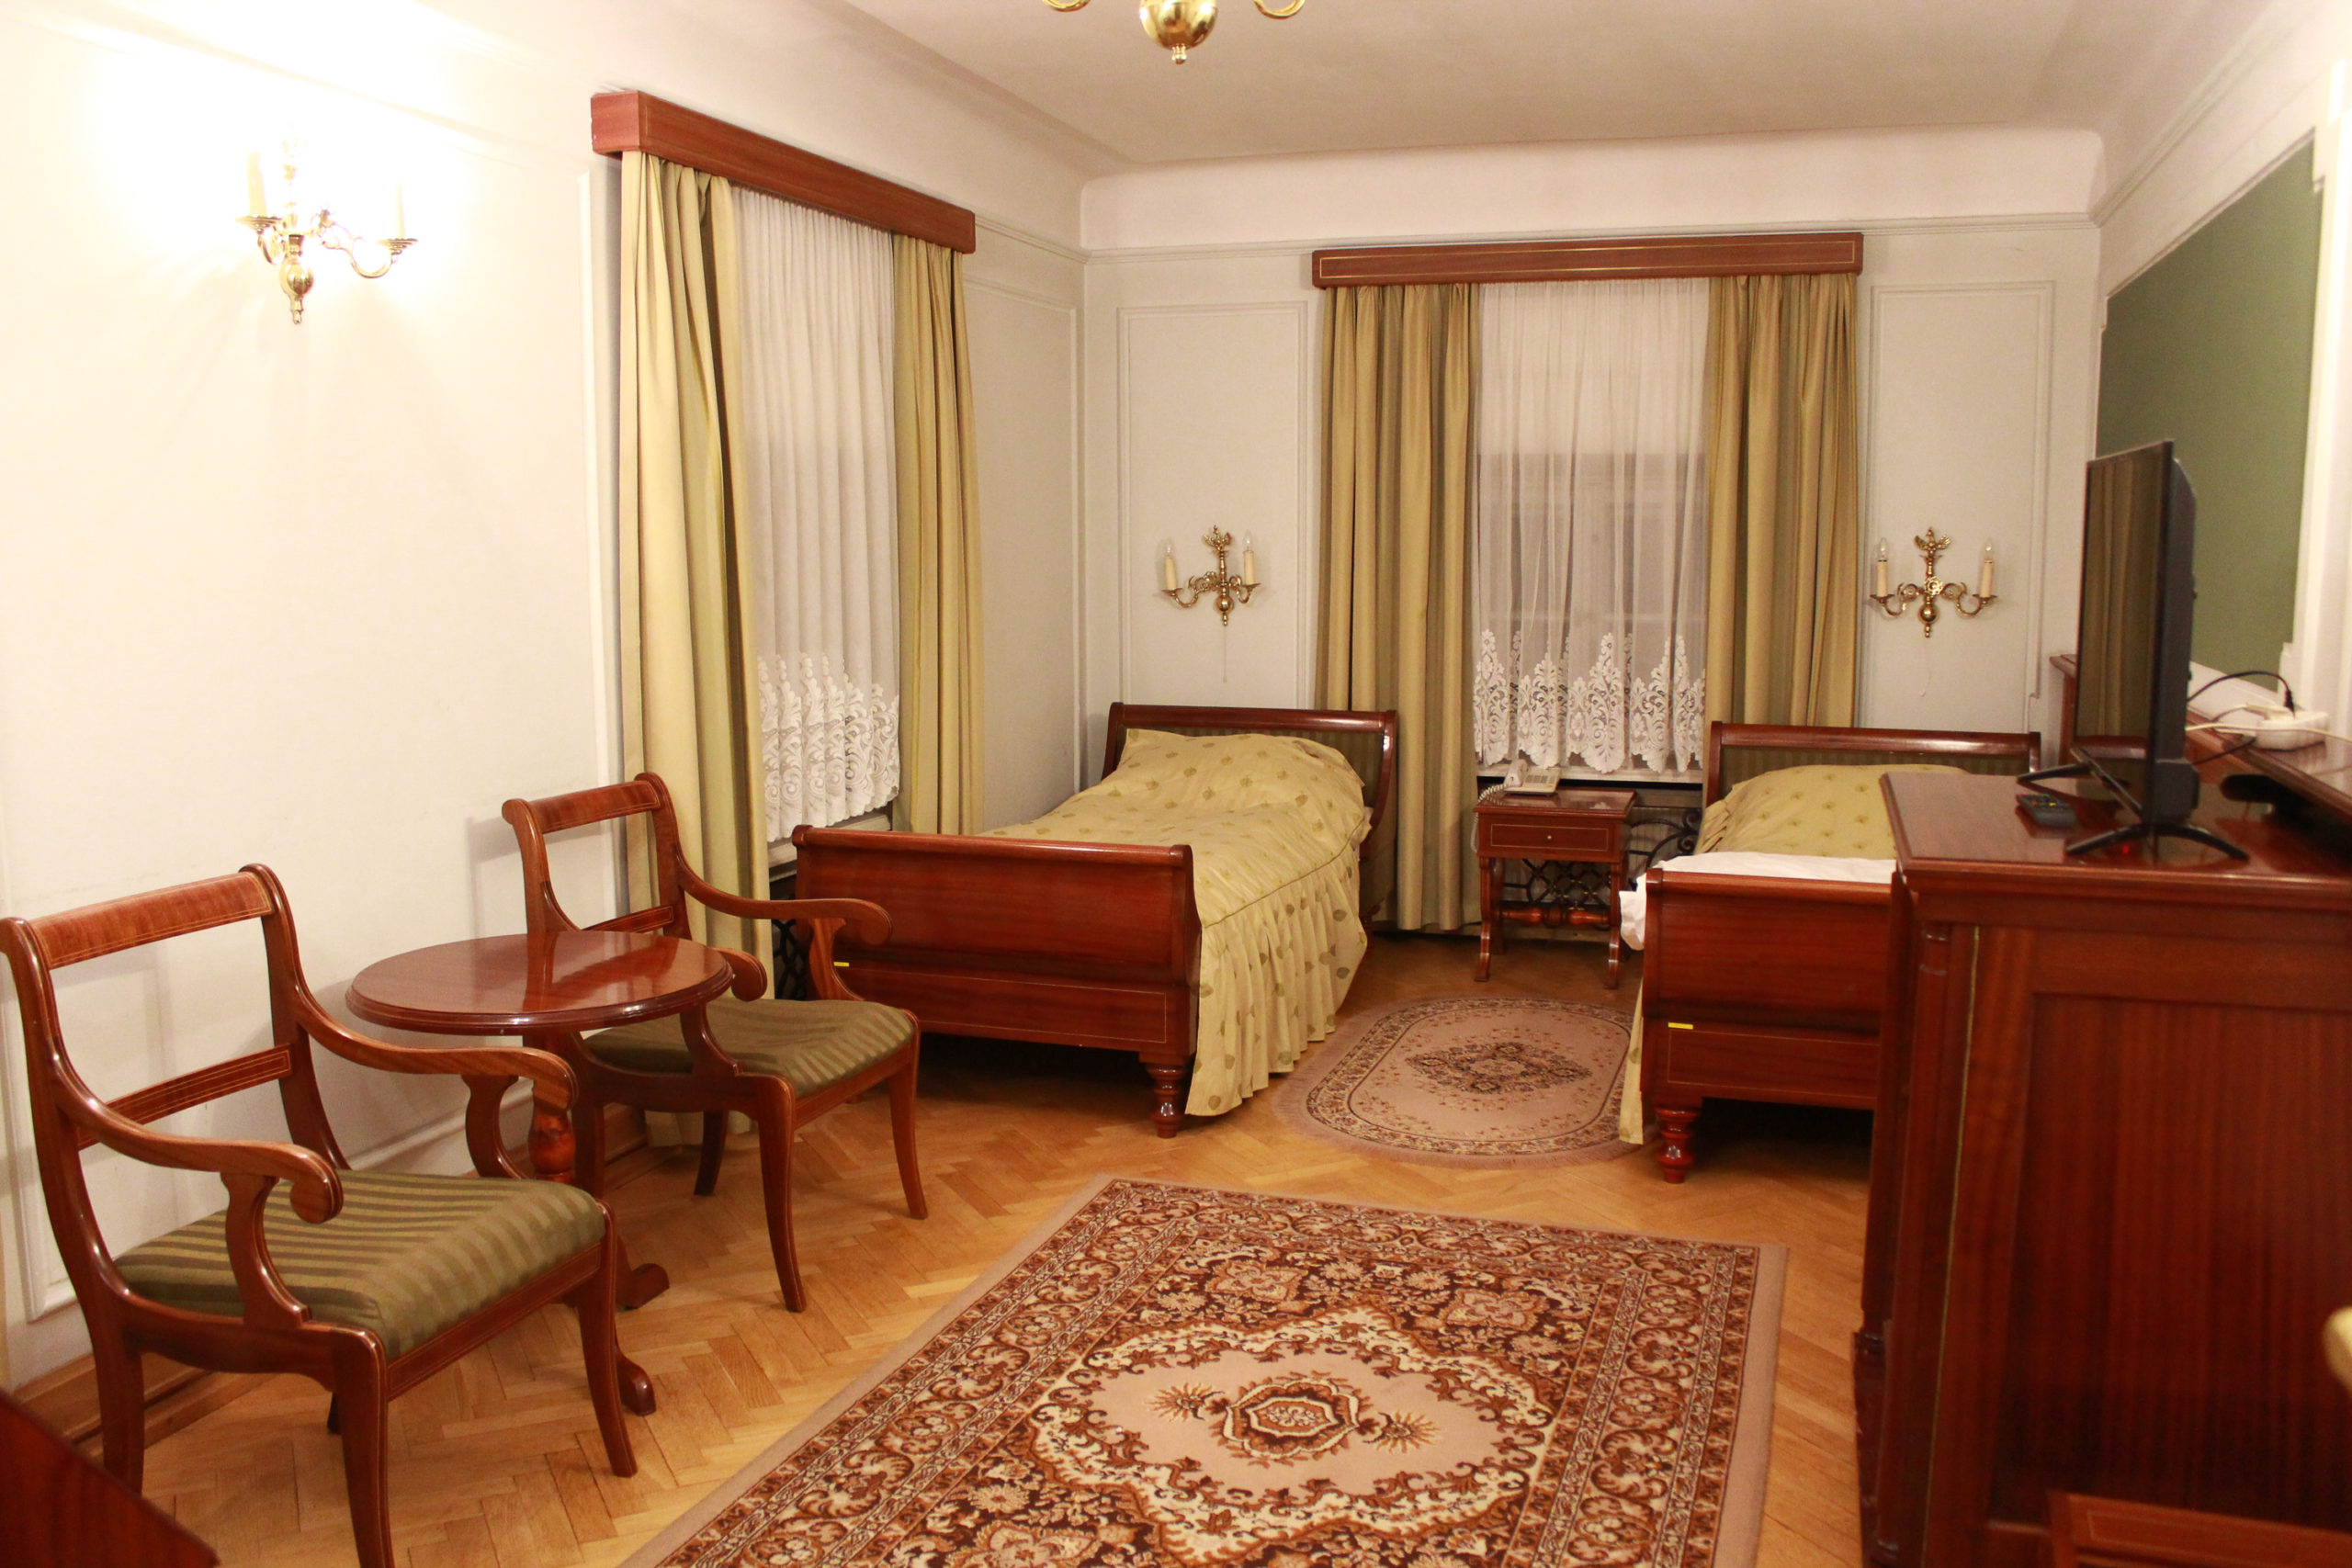 pokój hotelowy w Jabłonnie